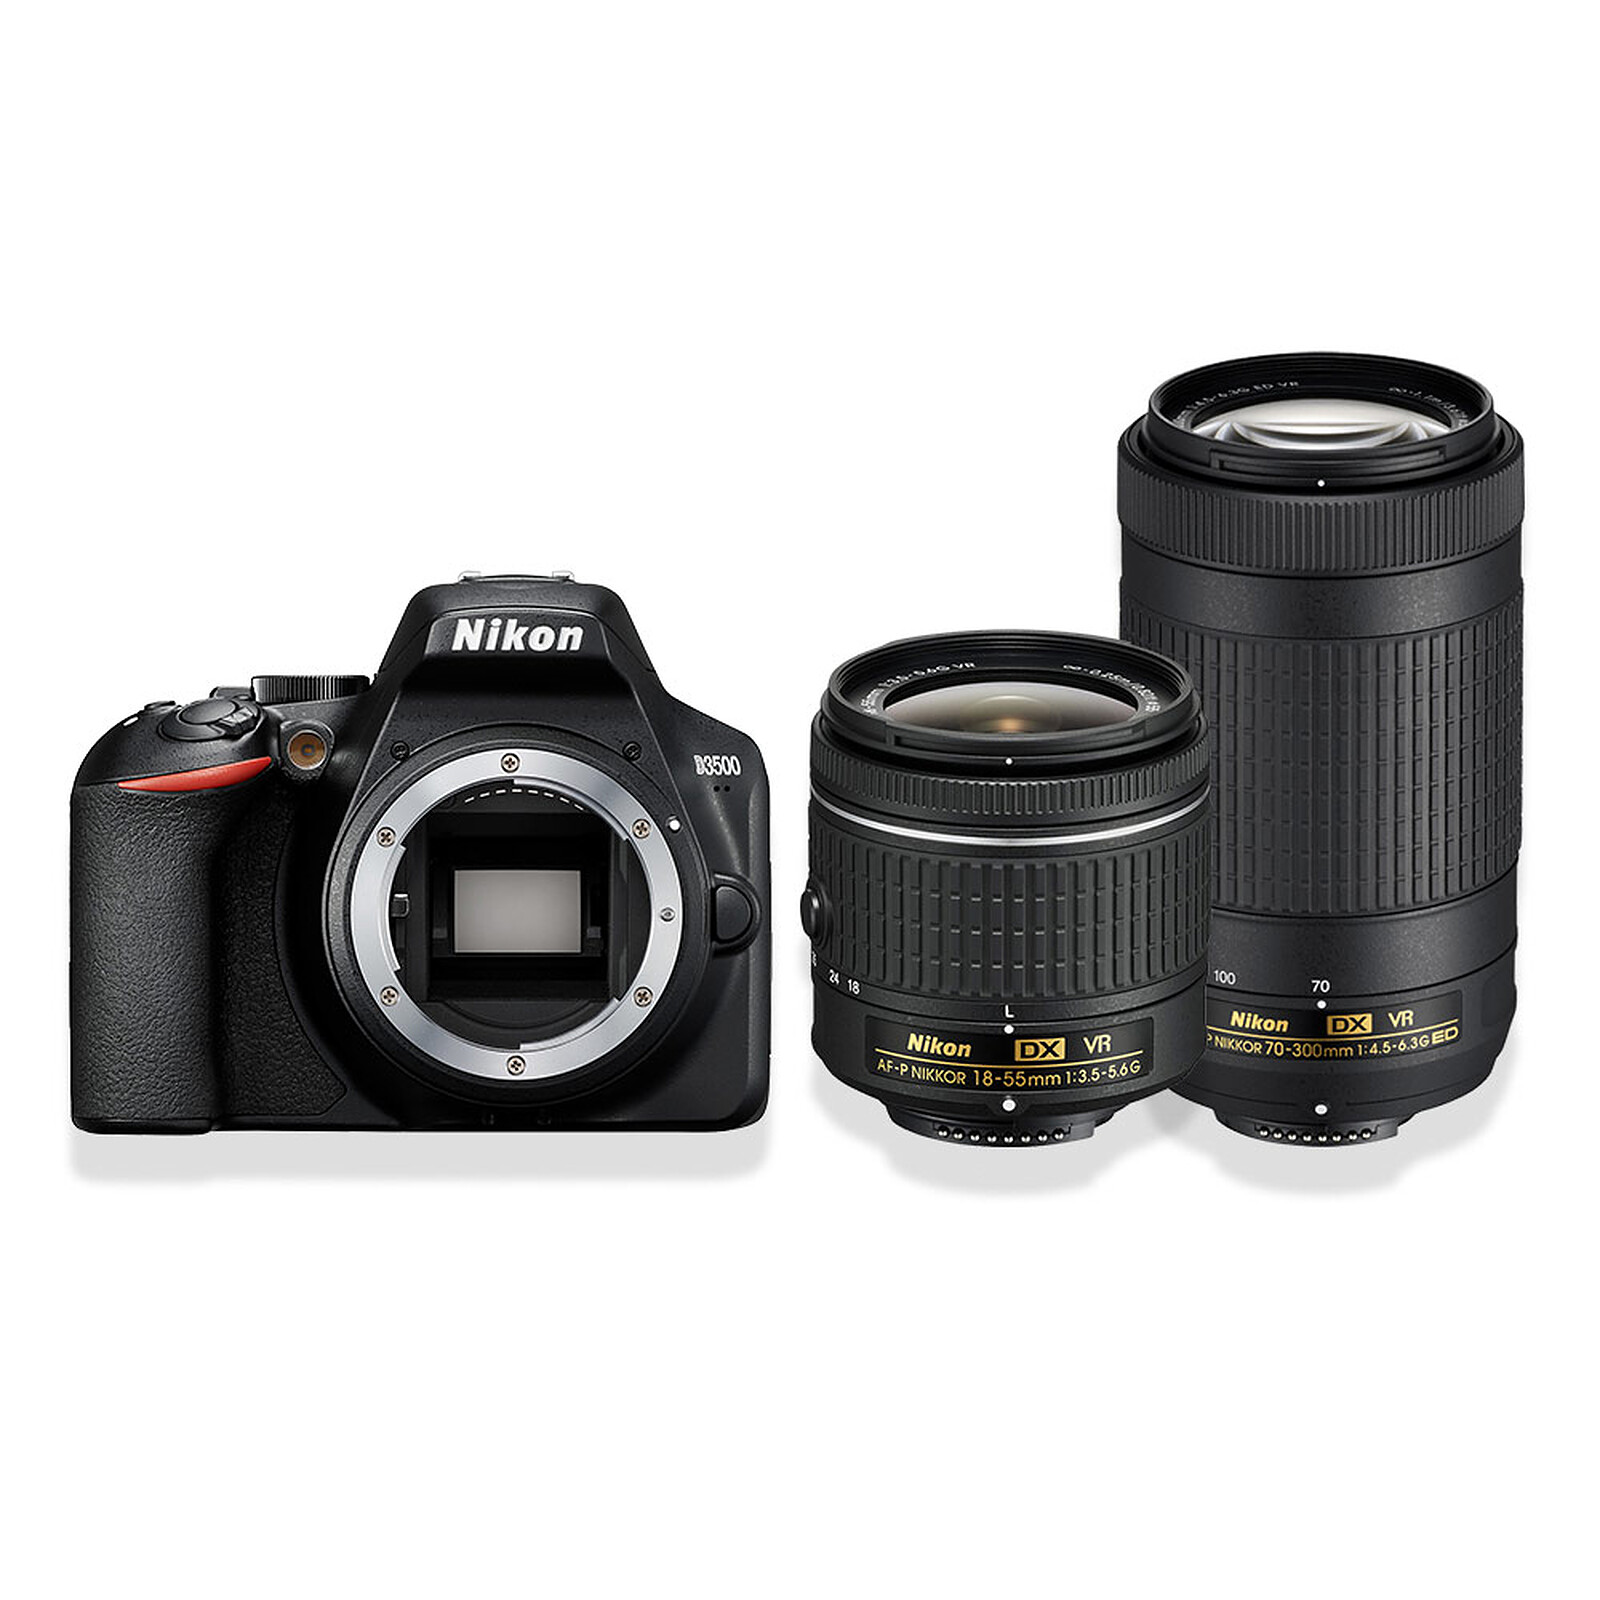 Nikon D3500 24.2MP DX Format DX Appareil Photo Numérique Double Zoom Kit  avec Objectifs 18-55mm f/3.5-5.6 et 70-300mm f/4.5-6.3 (Import Japon)